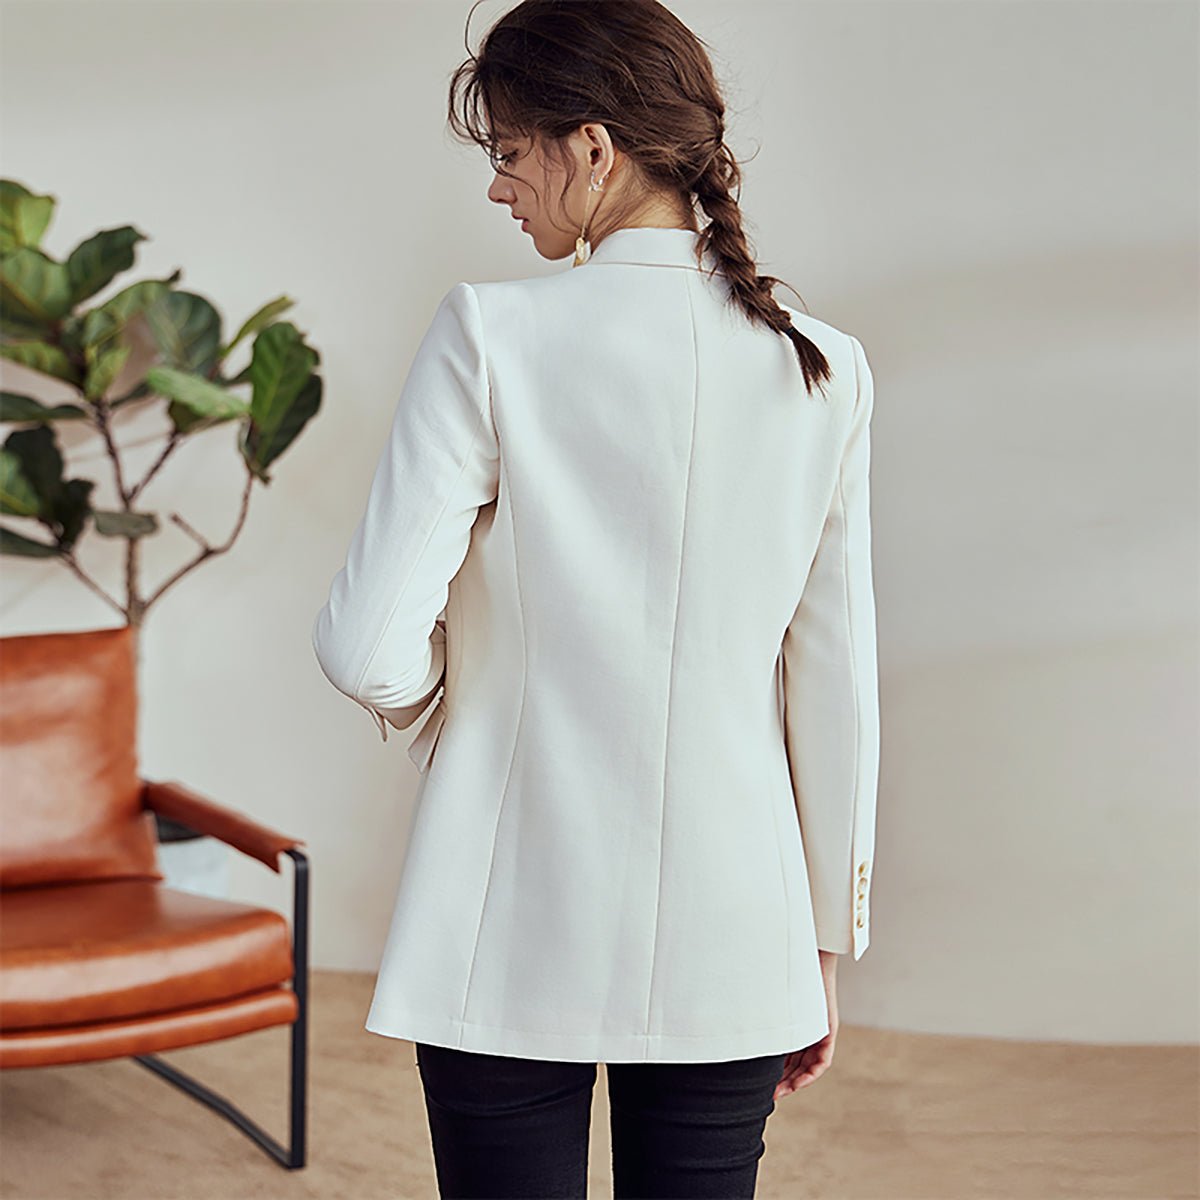 Gorgeous White Tailored Blazer - 0cm